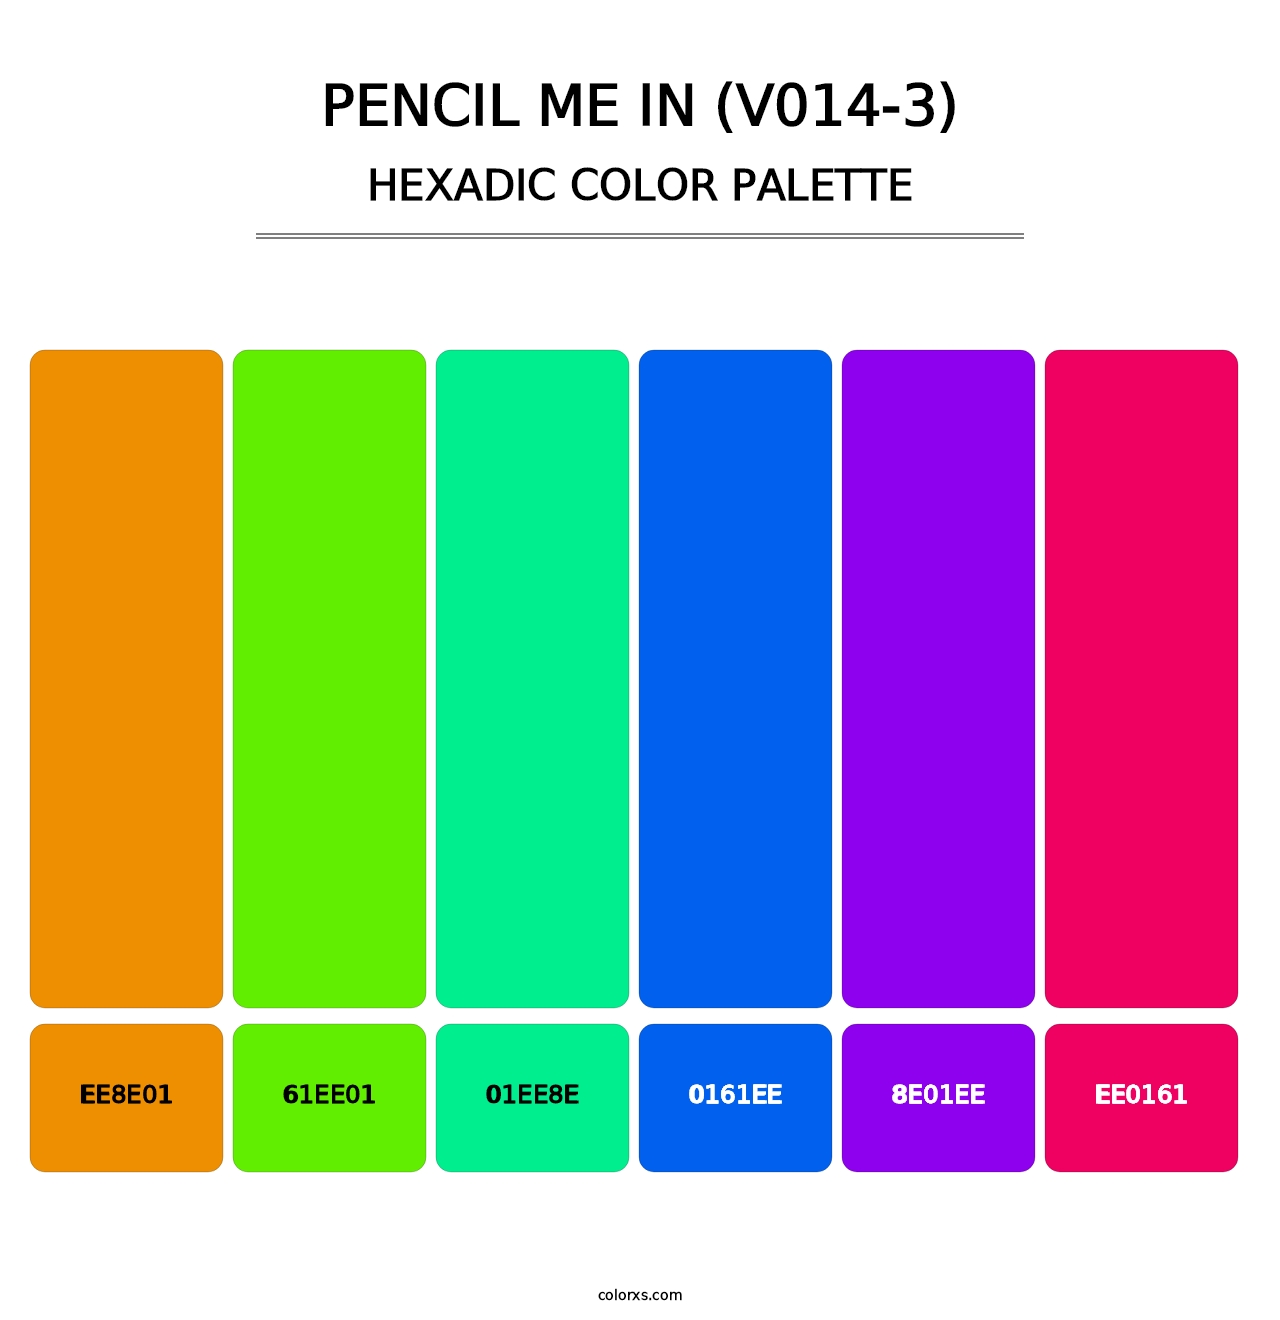 Pencil Me In (V014-3) - Hexadic Color Palette